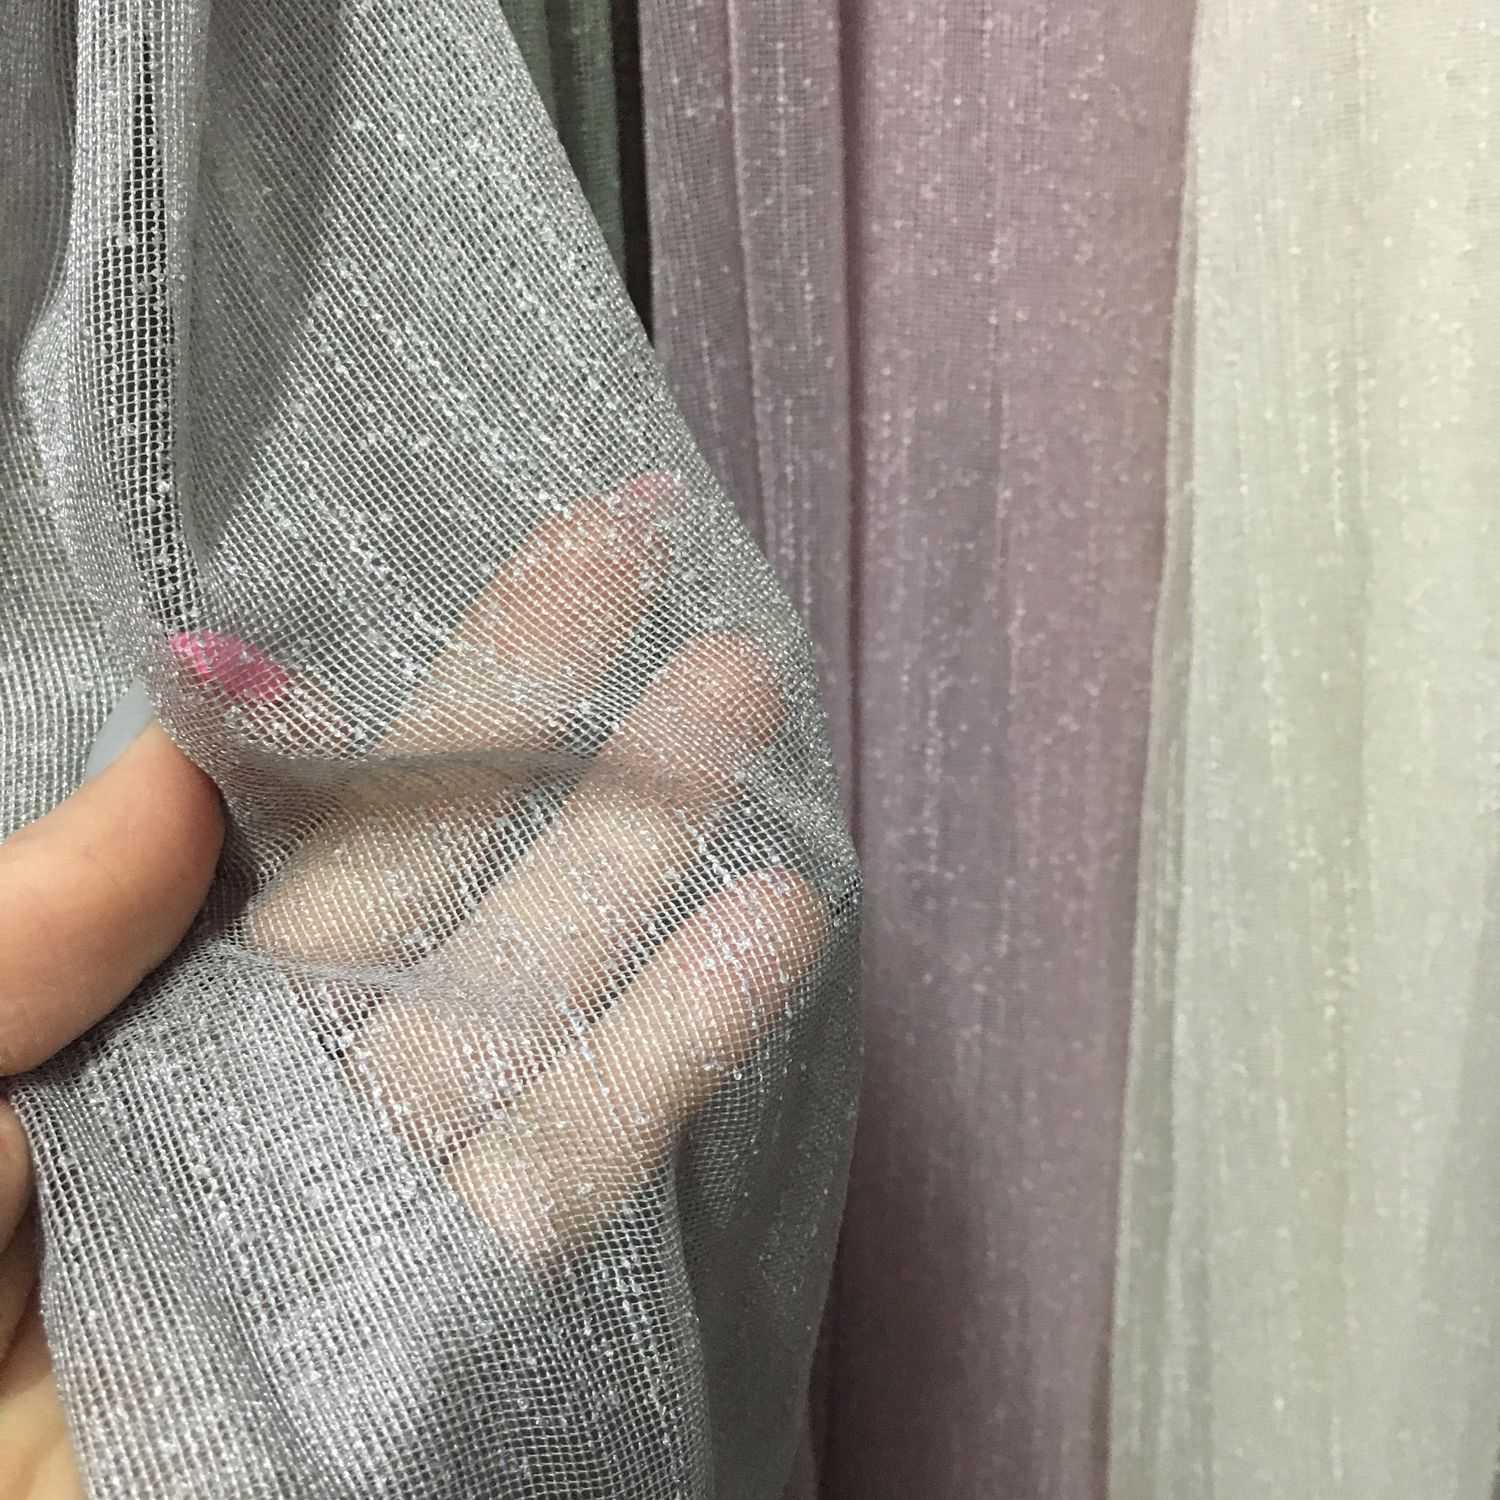 Как можно погладить деликатную органзу, чтобы не испортить Как гладить большие шторы из органзы Нужно ли утюжить одежду из этой ткани